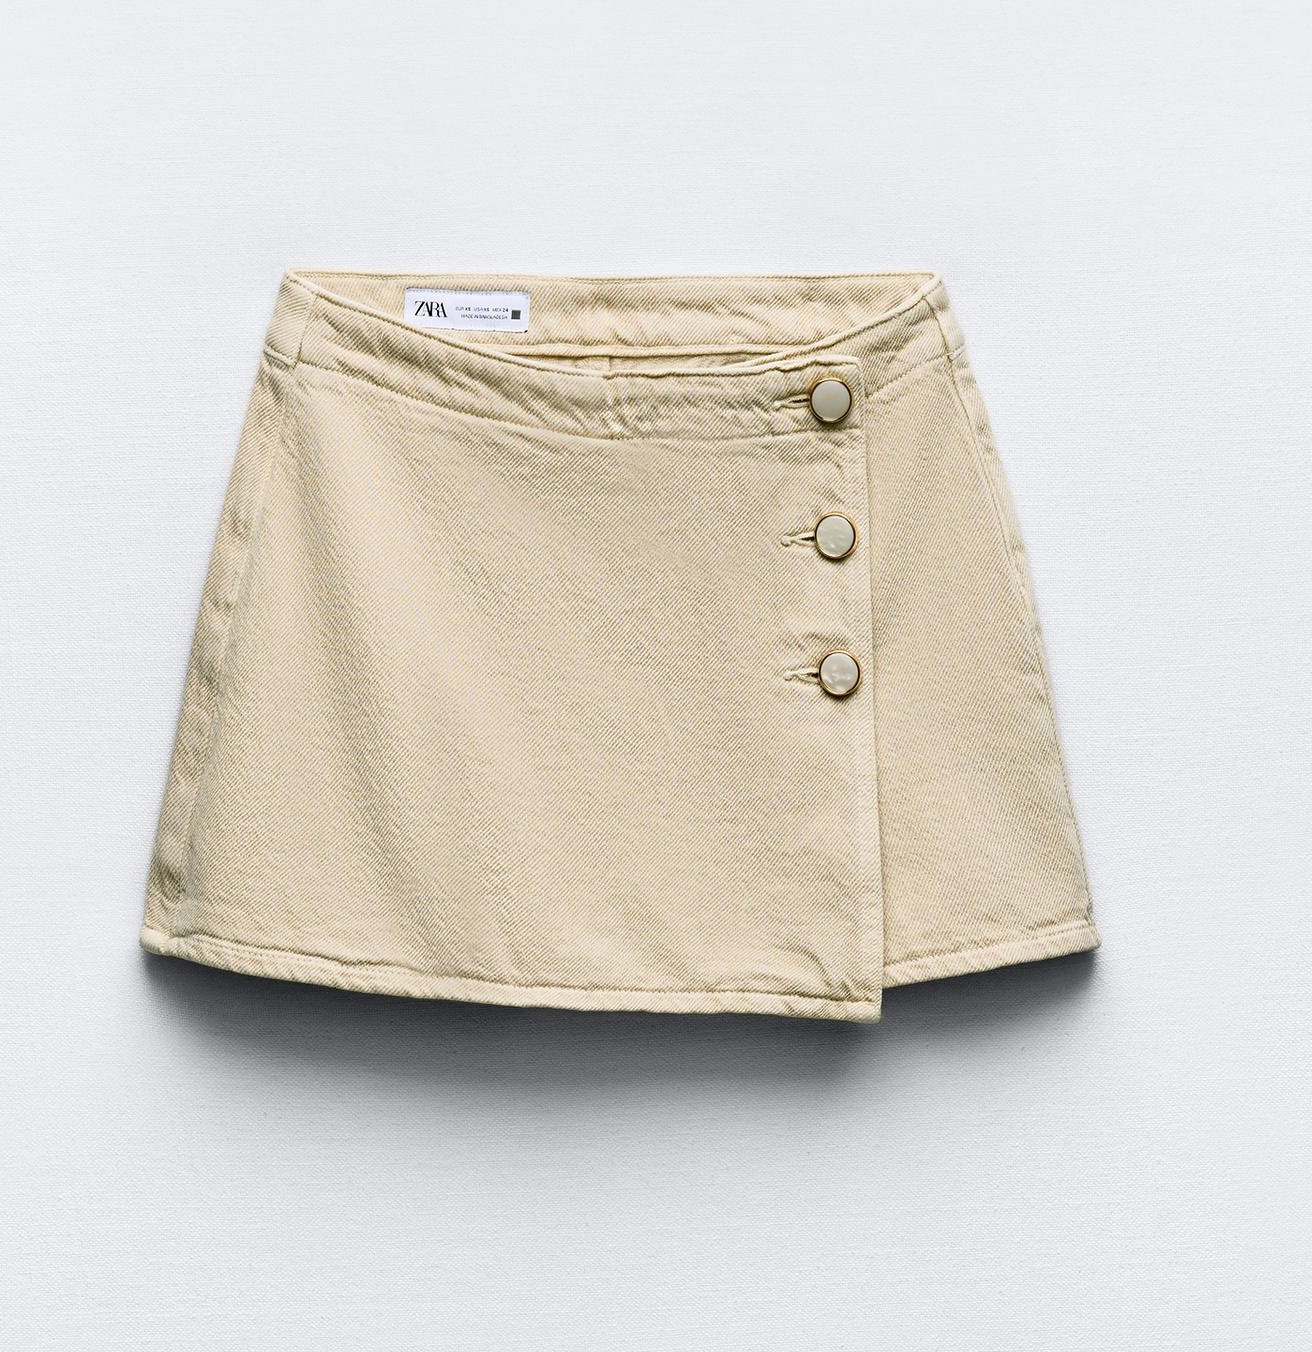 

Юбка-шорты Zara Z1975 Denim Wrap With Buttons, бежевый